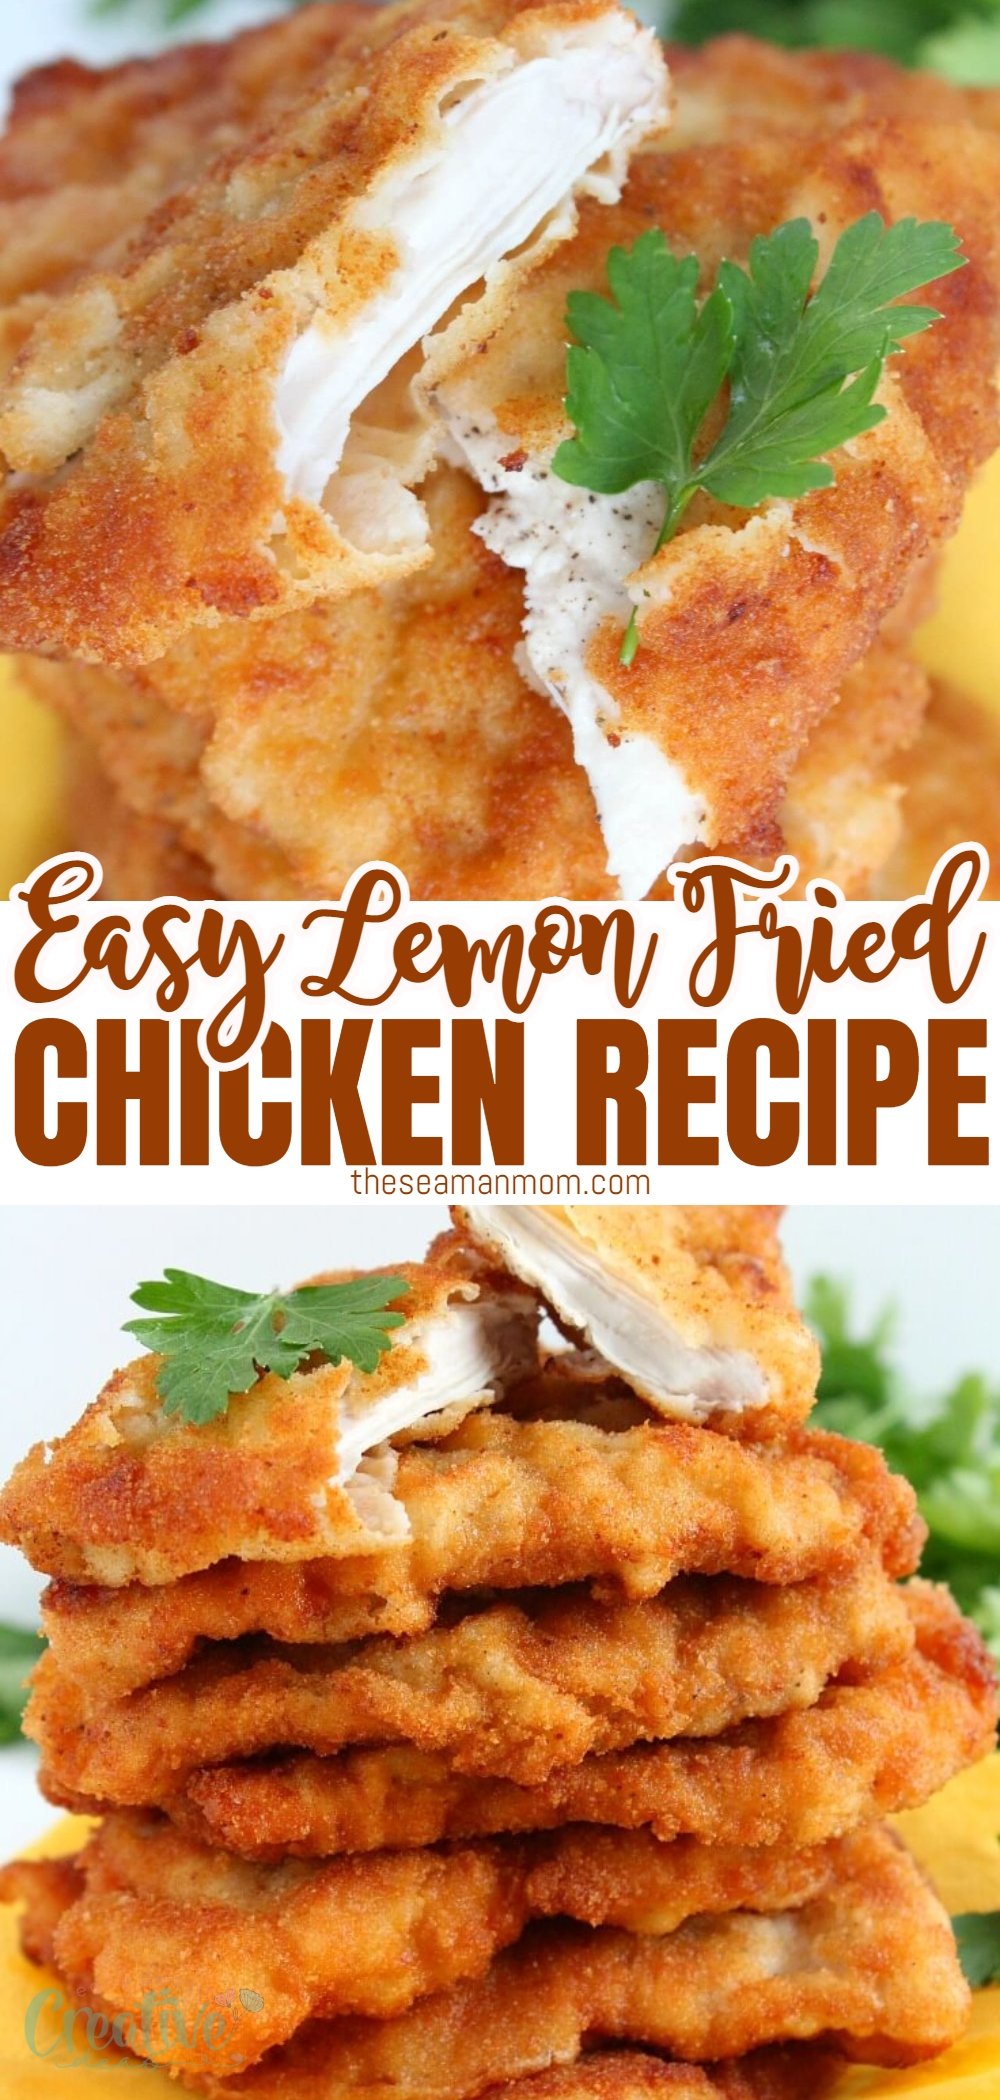 Lemon fried chicken recipe